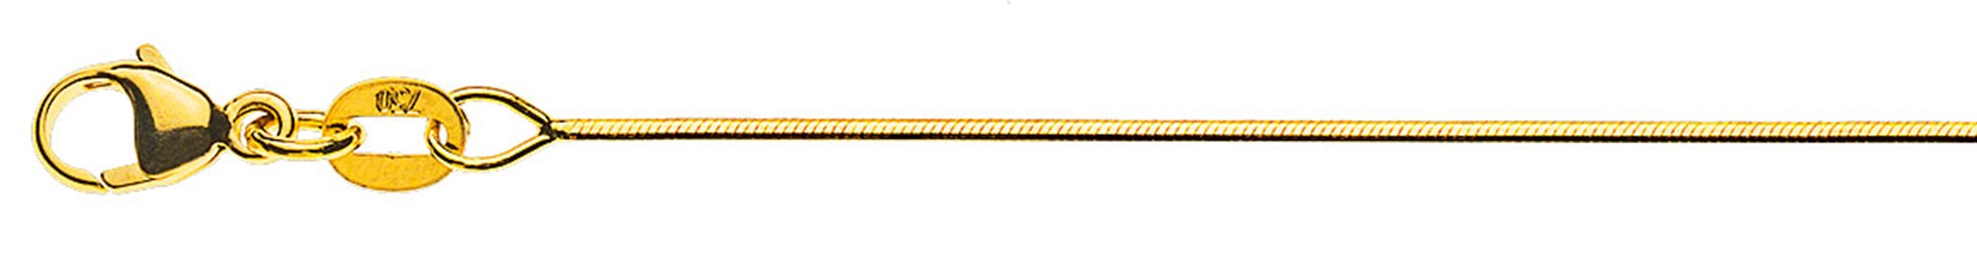 AURONOS Prestige Halskette Gelbgold 18K Schlangenkette diamantiert 50cm 0.8mm